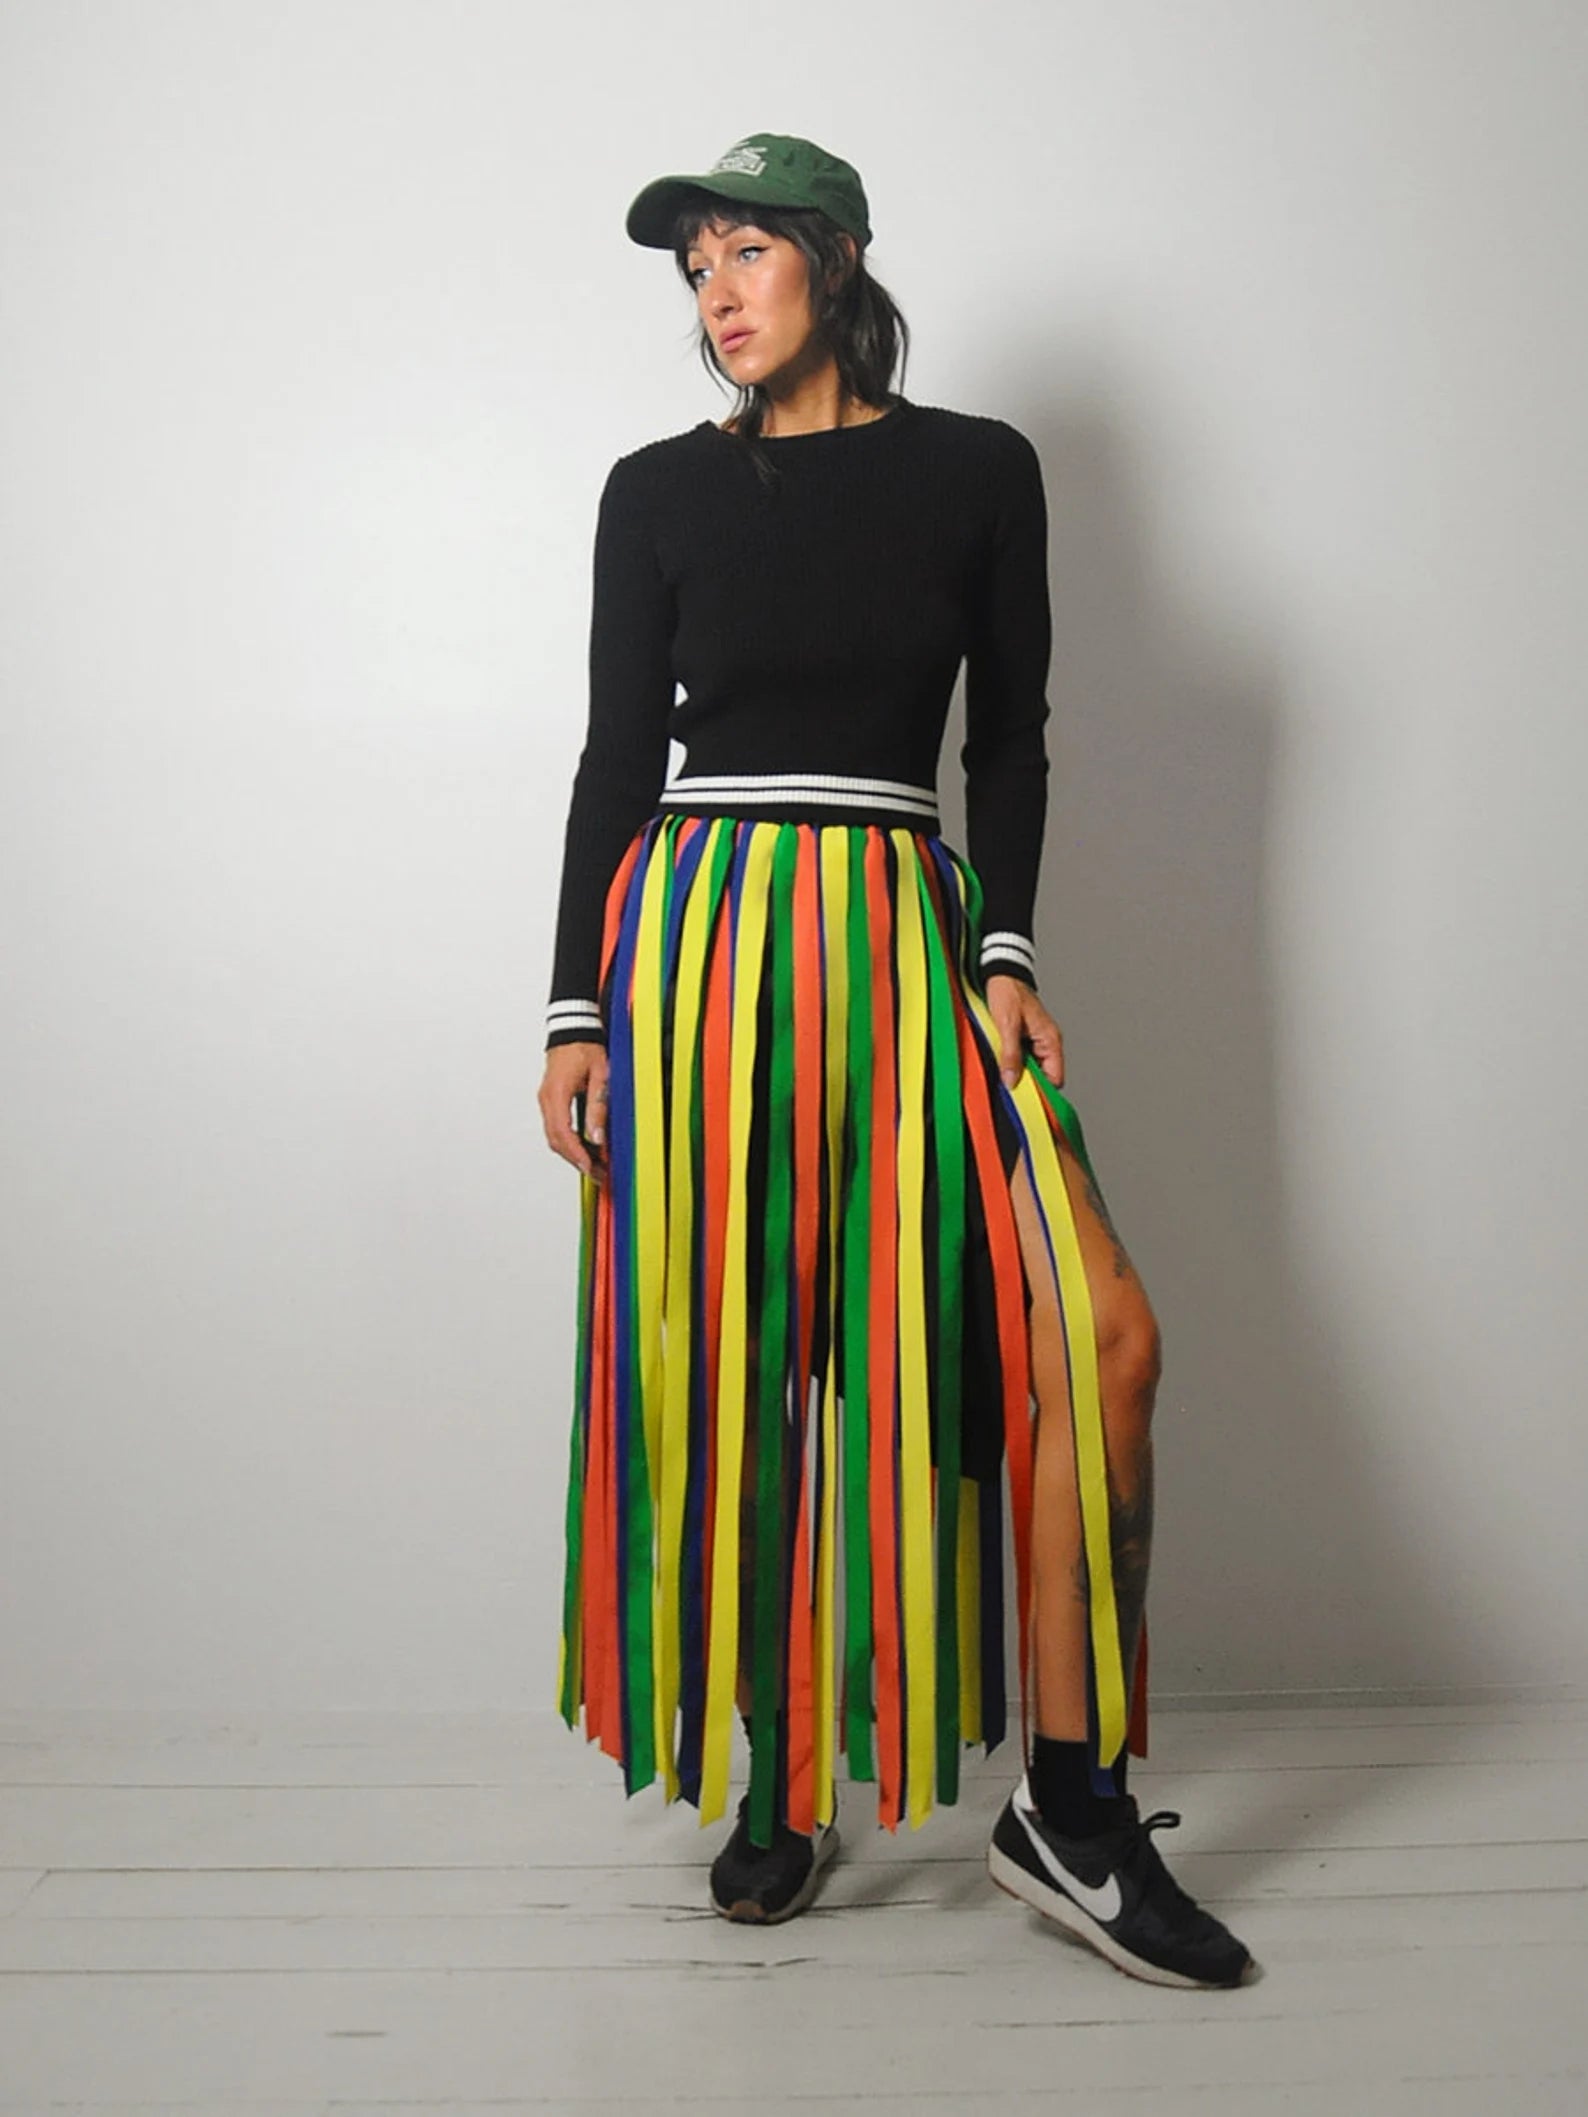 1970's Rare Carwash Ribbon Skirt